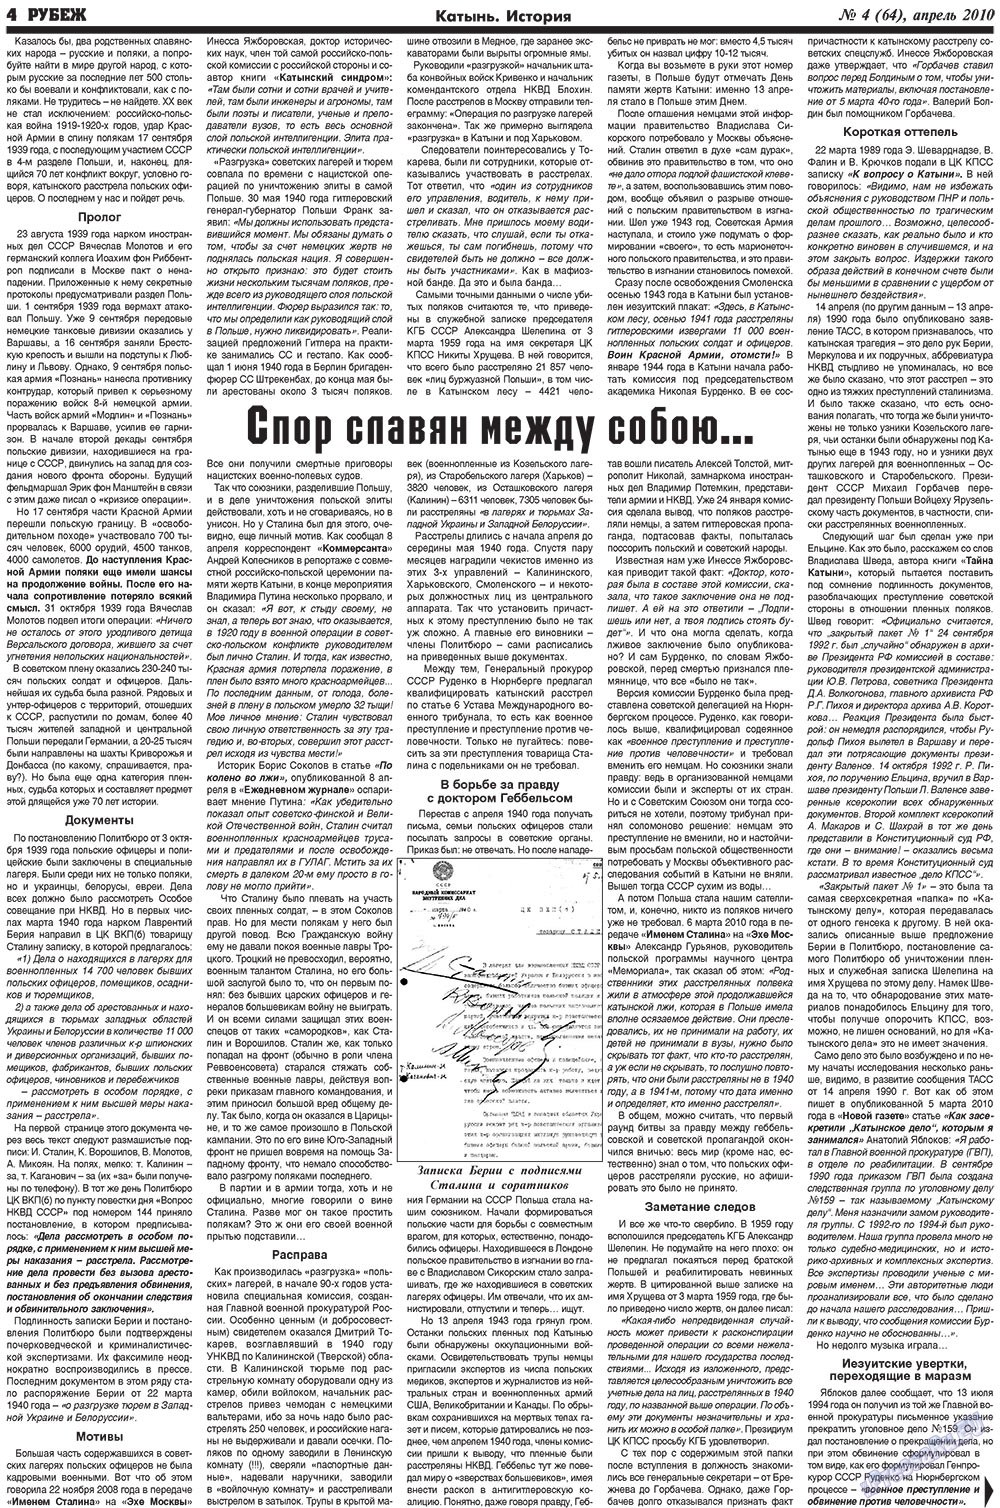 Рубеж (газета). 2010 год, номер 4, стр. 4